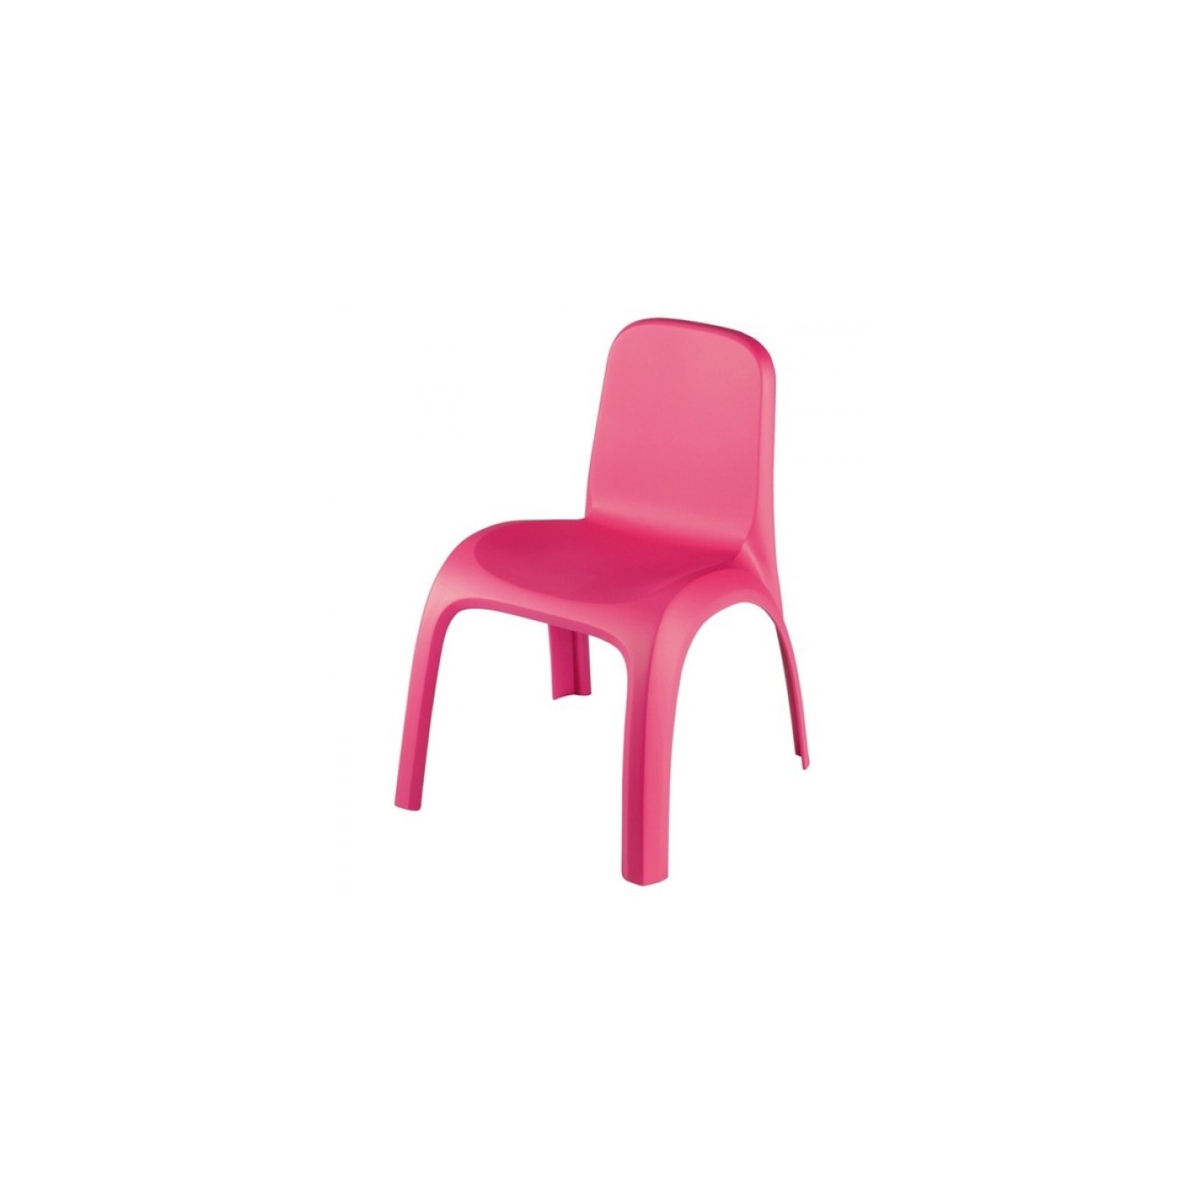 Стул без запаха. Стульчик детский (розовый). Стул Pilsan King зелeный. Бежево розовый стул. Детские стулья Леруа Мерлен.